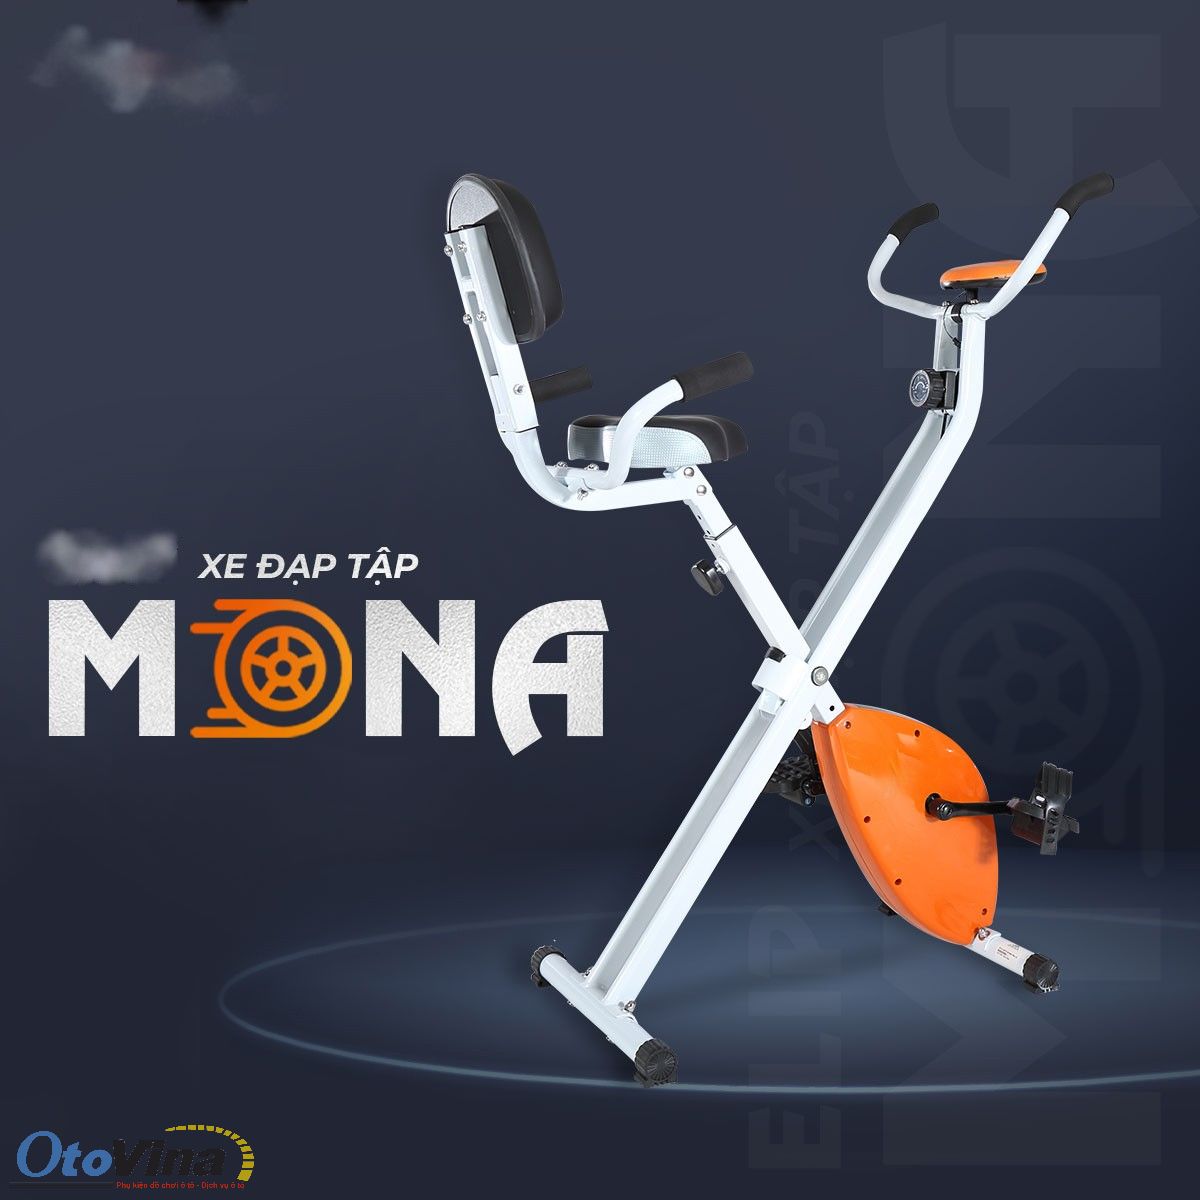 Xe đạp tập Nextsport Mona sở hữu thiết kế độc đáo, nổi bật với khả năng xếp gọn dễ dàng giúp sau mỗi lần sử dụng.